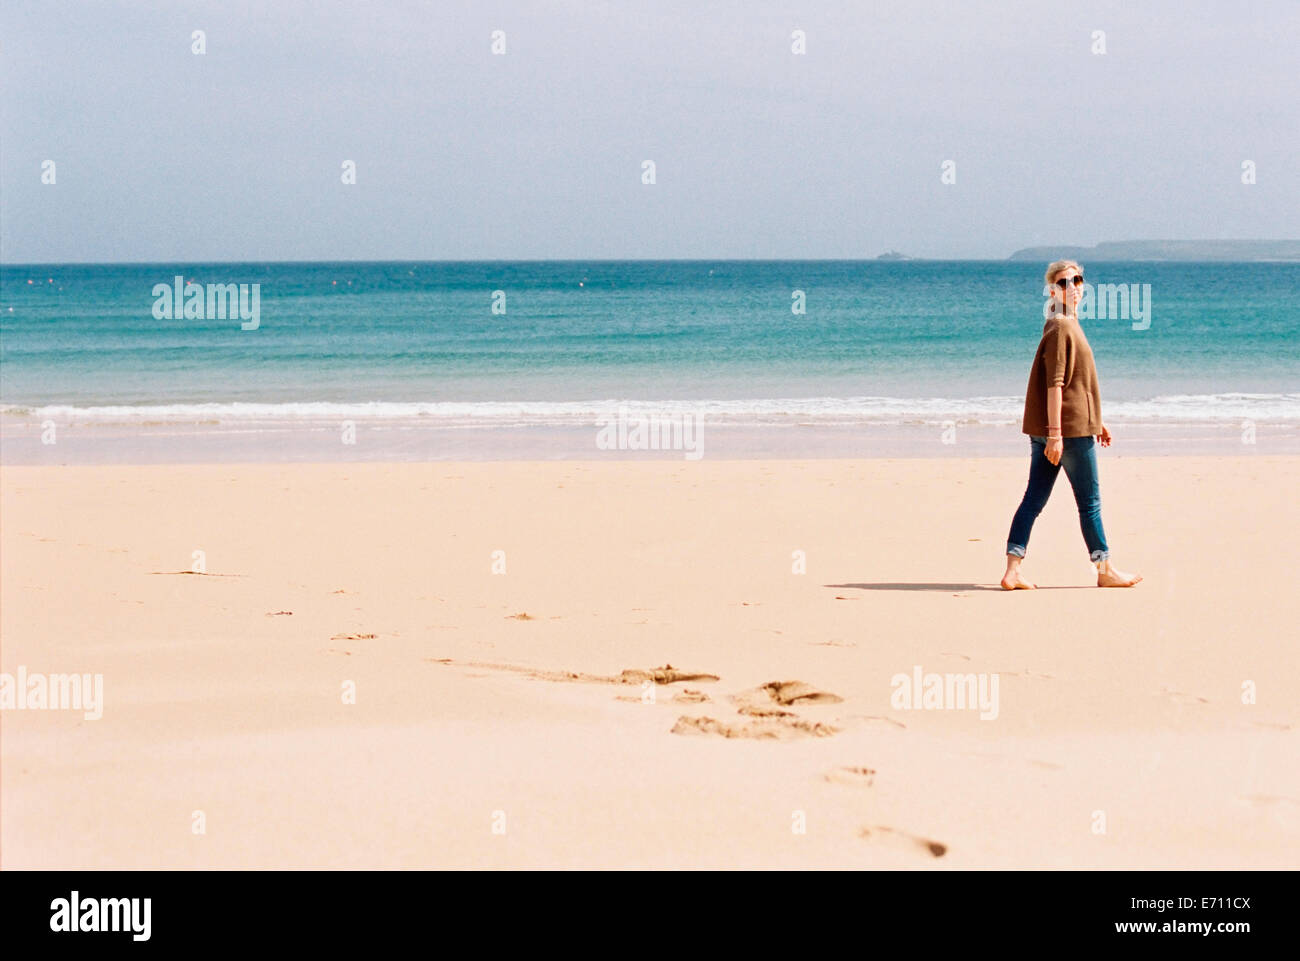 Eine Frau barfuss am Strand, so dass Fußspuren im Sand. Stockfoto